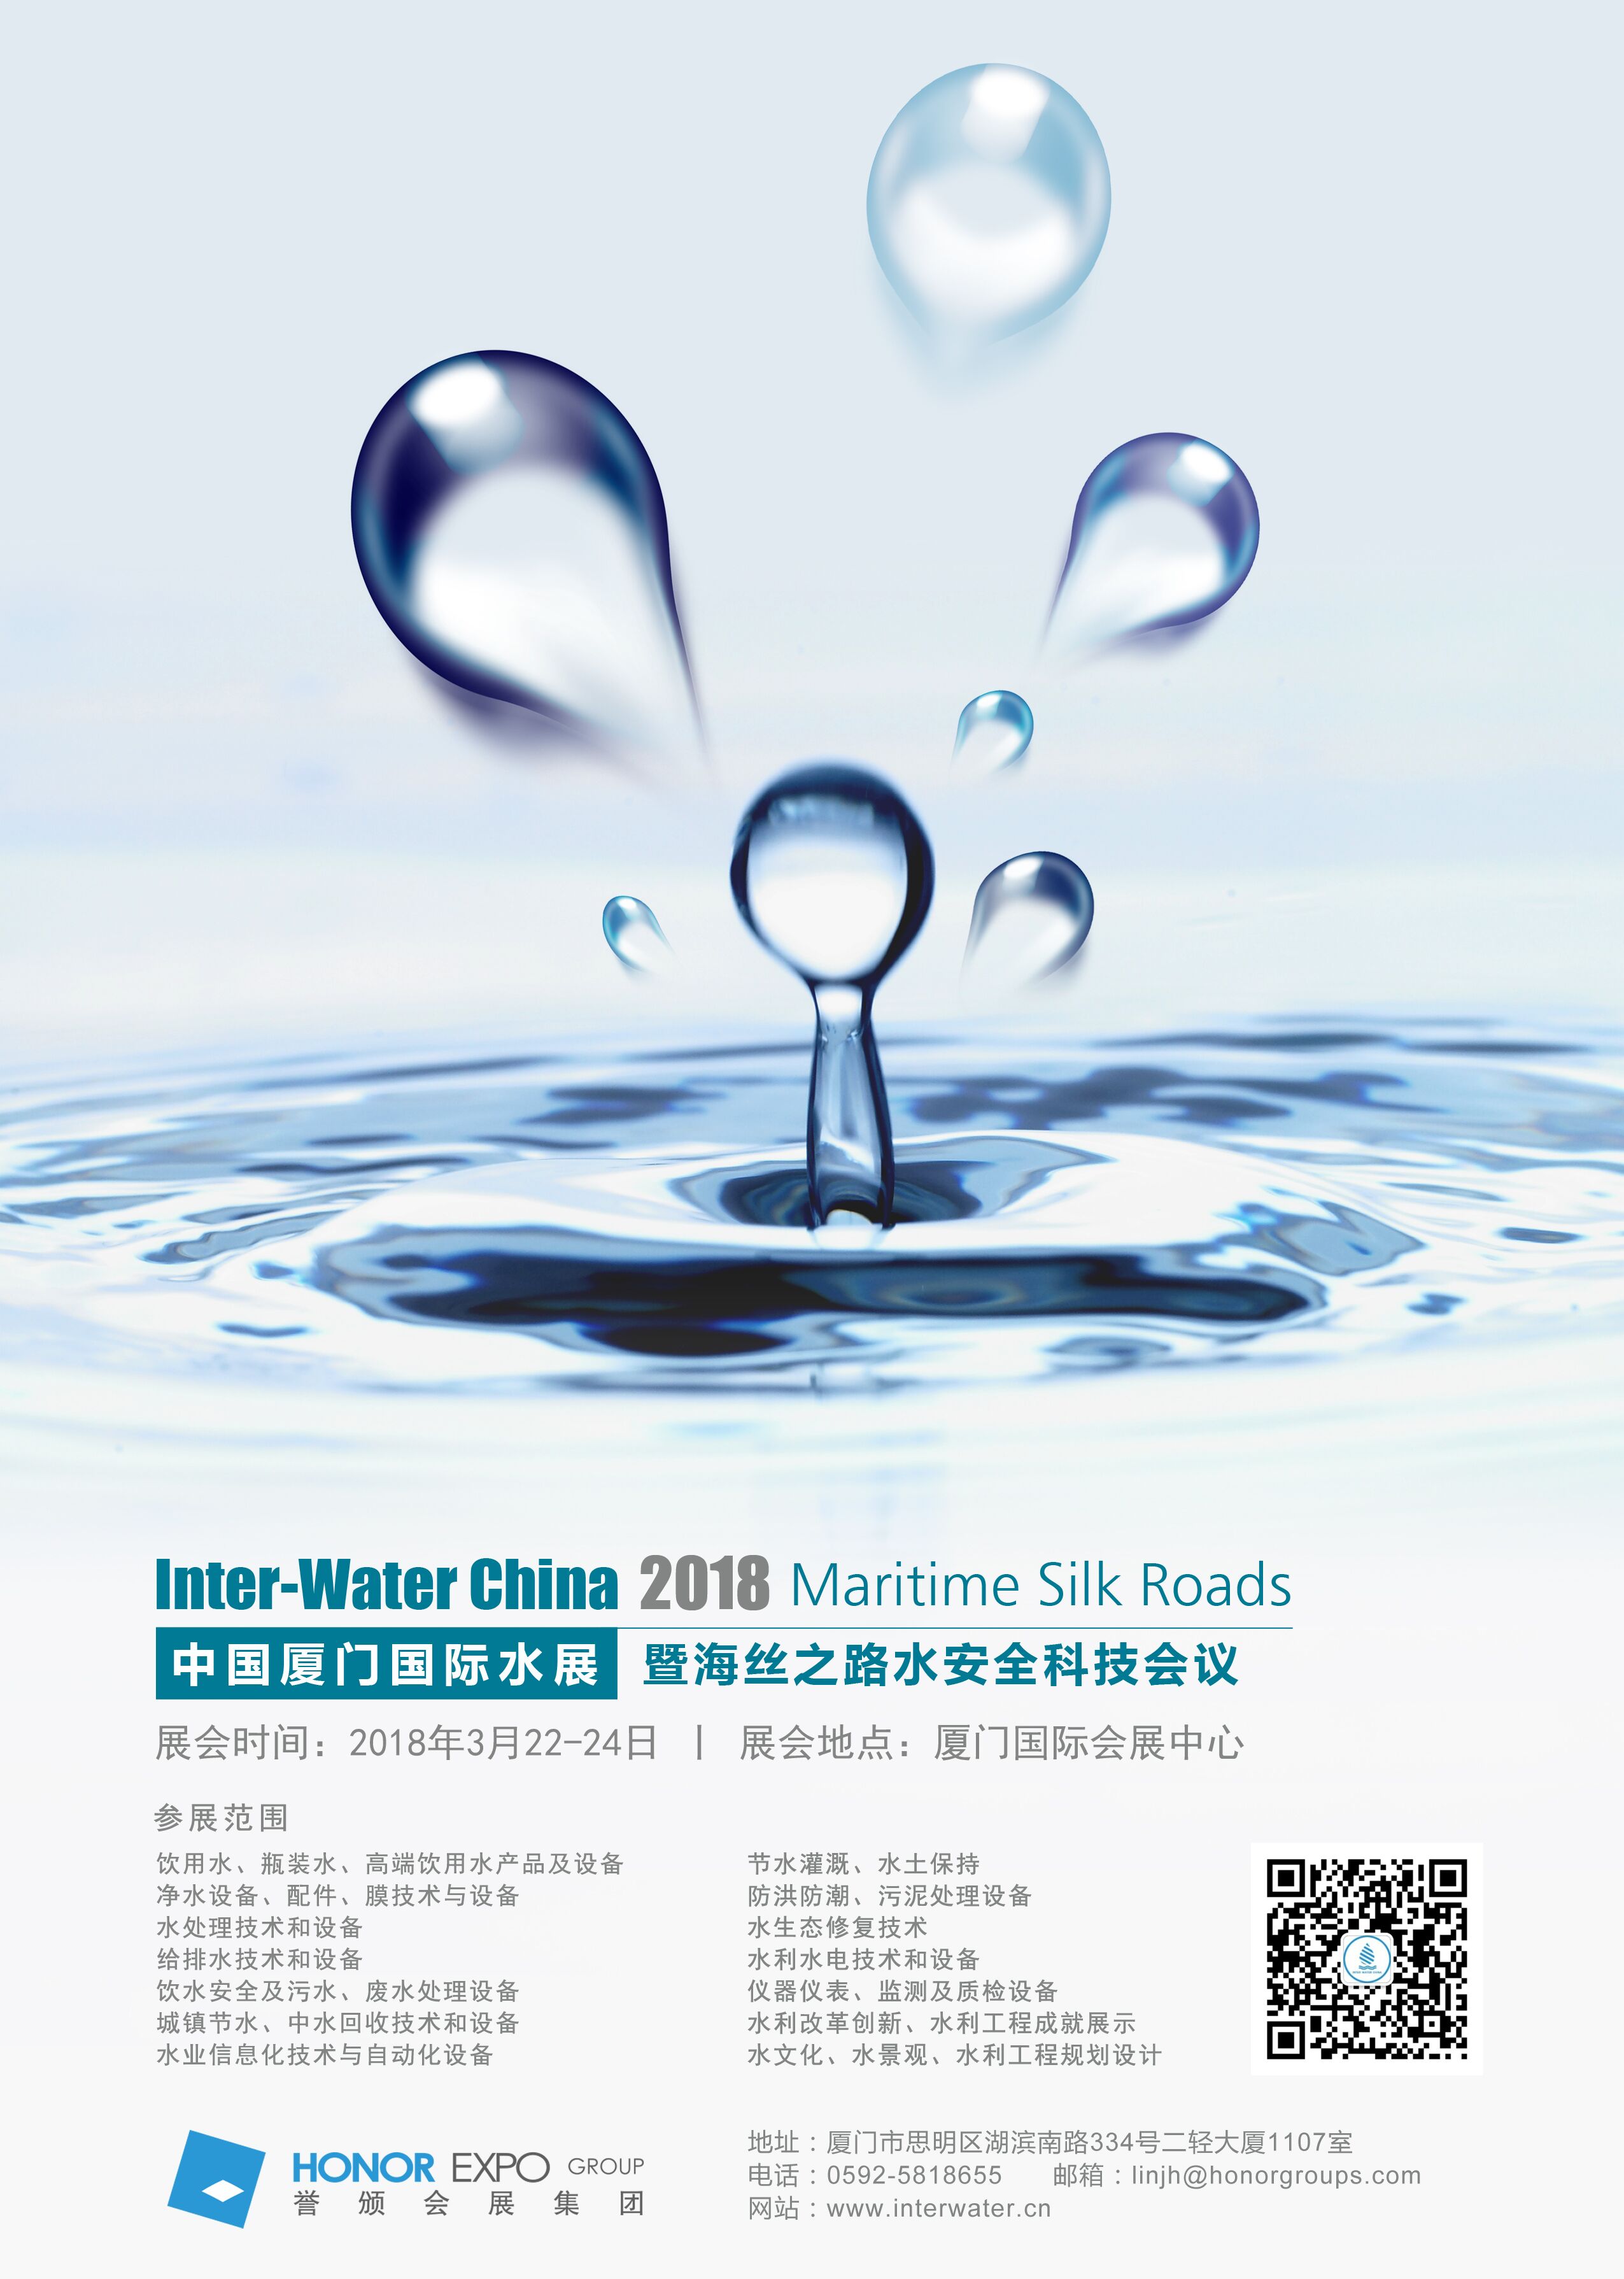 2018中国厦门国际水展暨海丝之路水安全科技会议